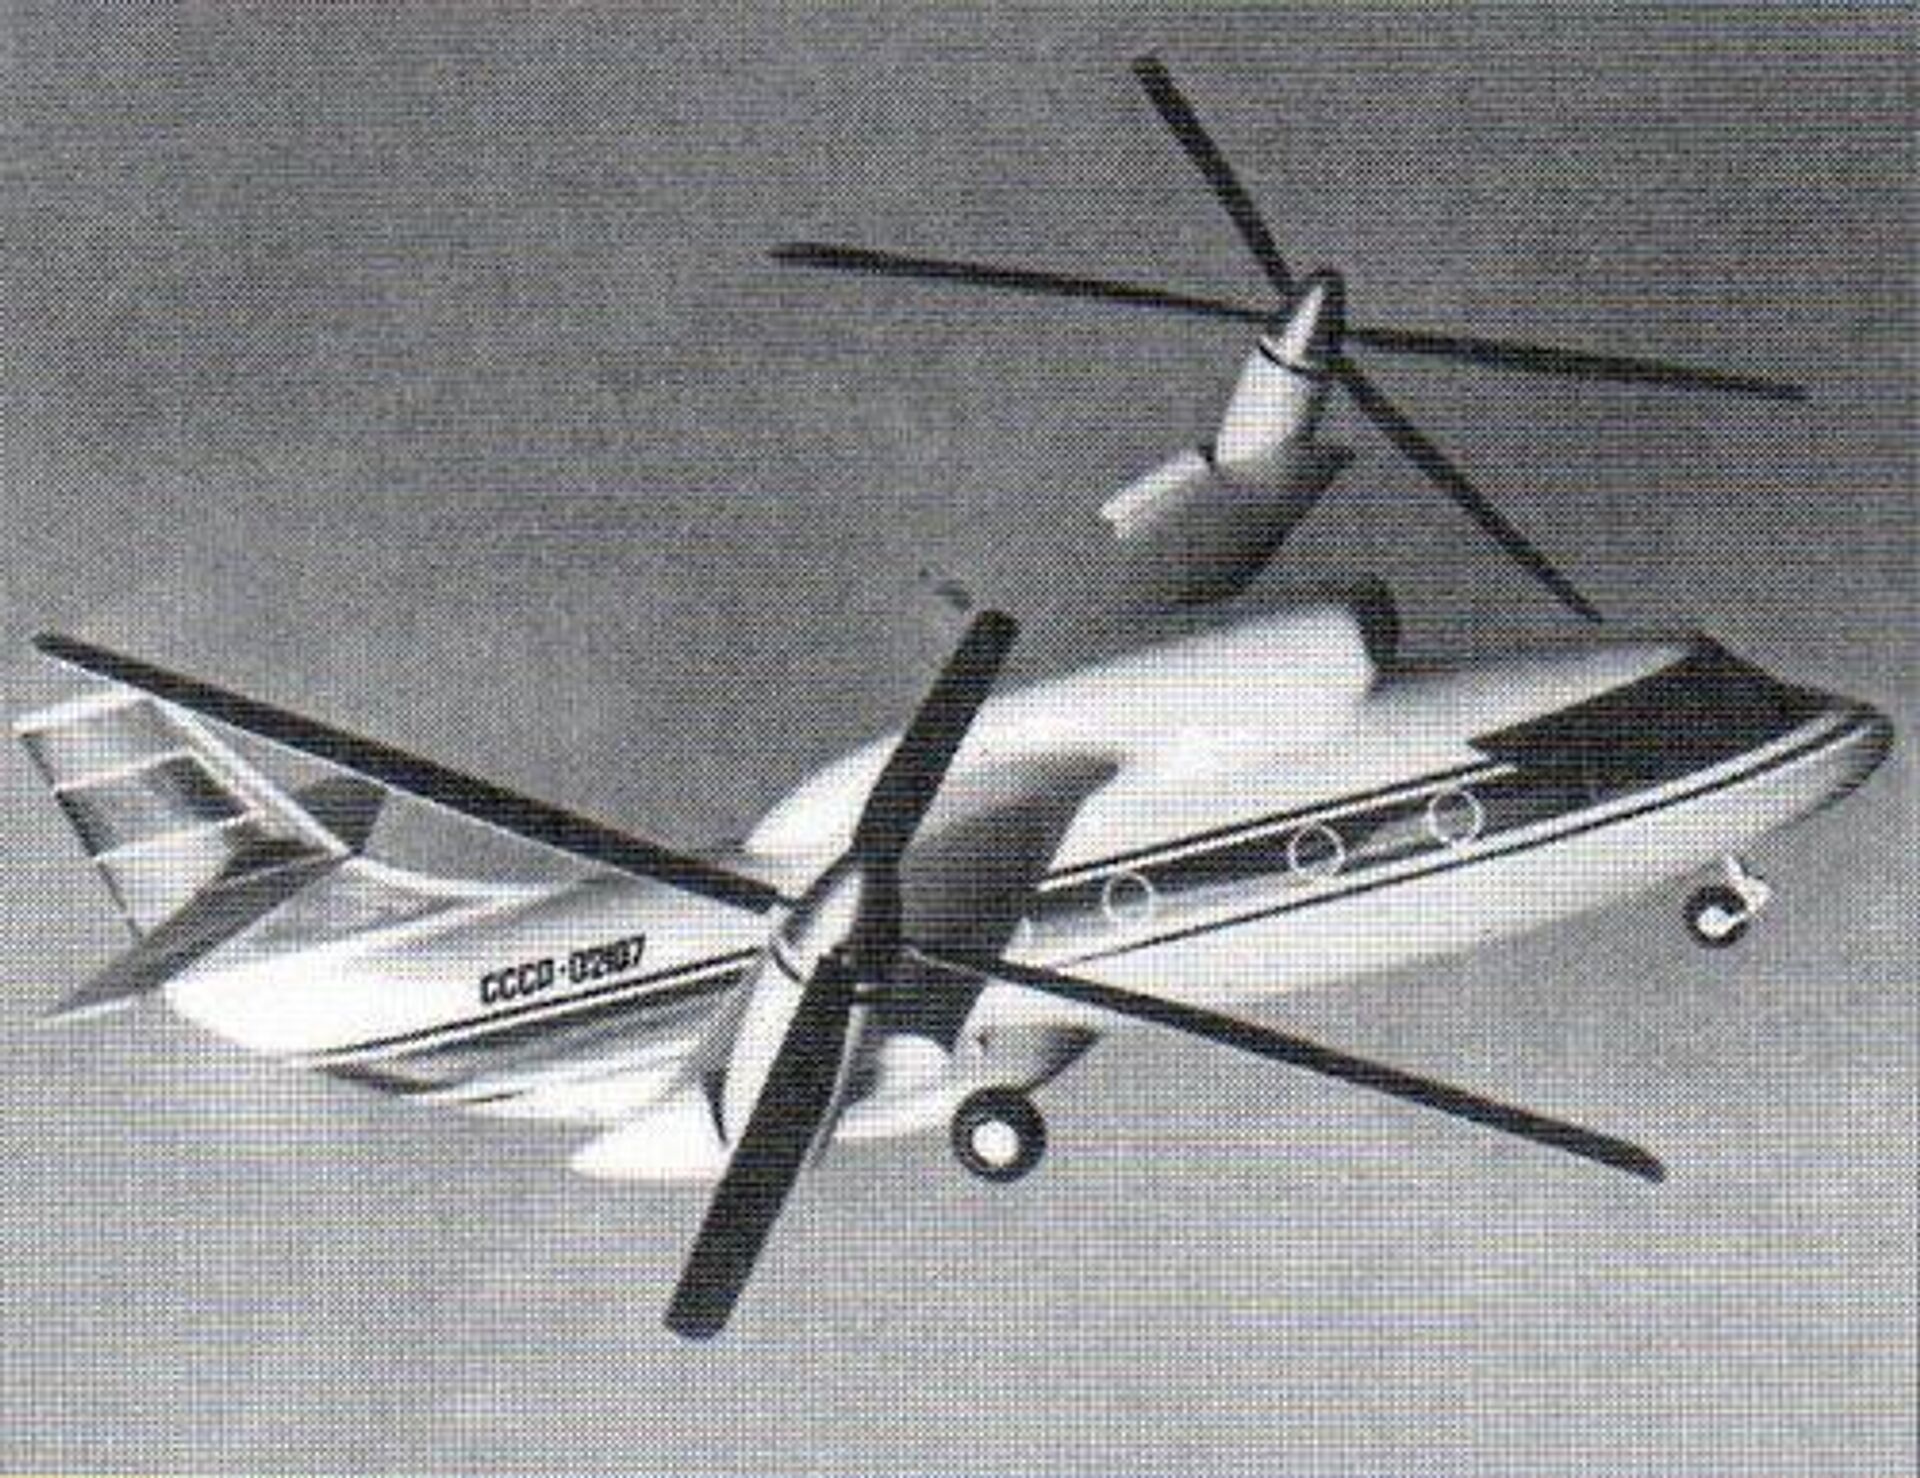 Mil Mi-30 tiltrotor convertiplane design. - Sputnik International, 1920, 09.12.2023